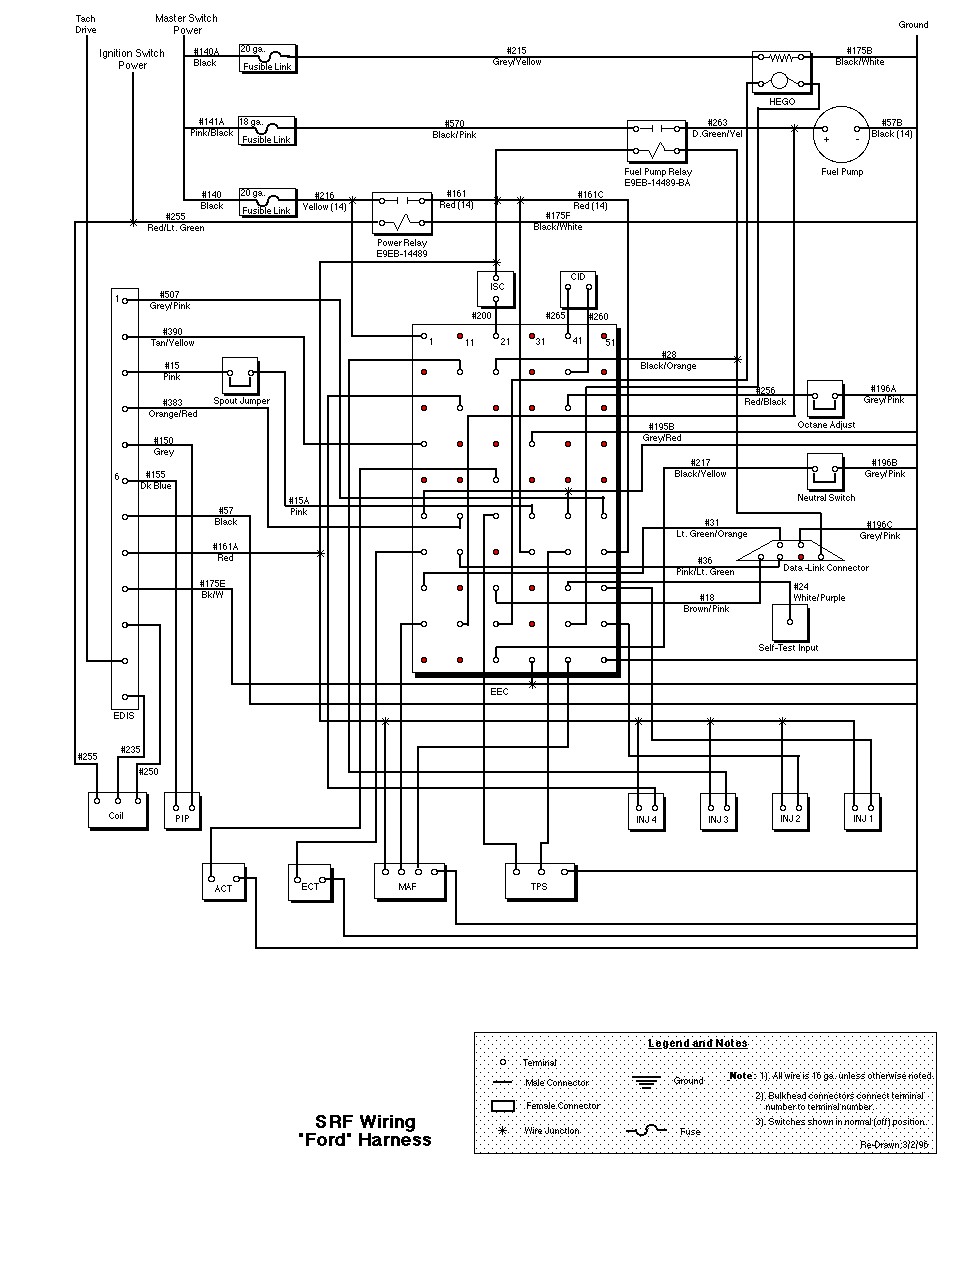 1995 Ford L9000 Wiring Schematics